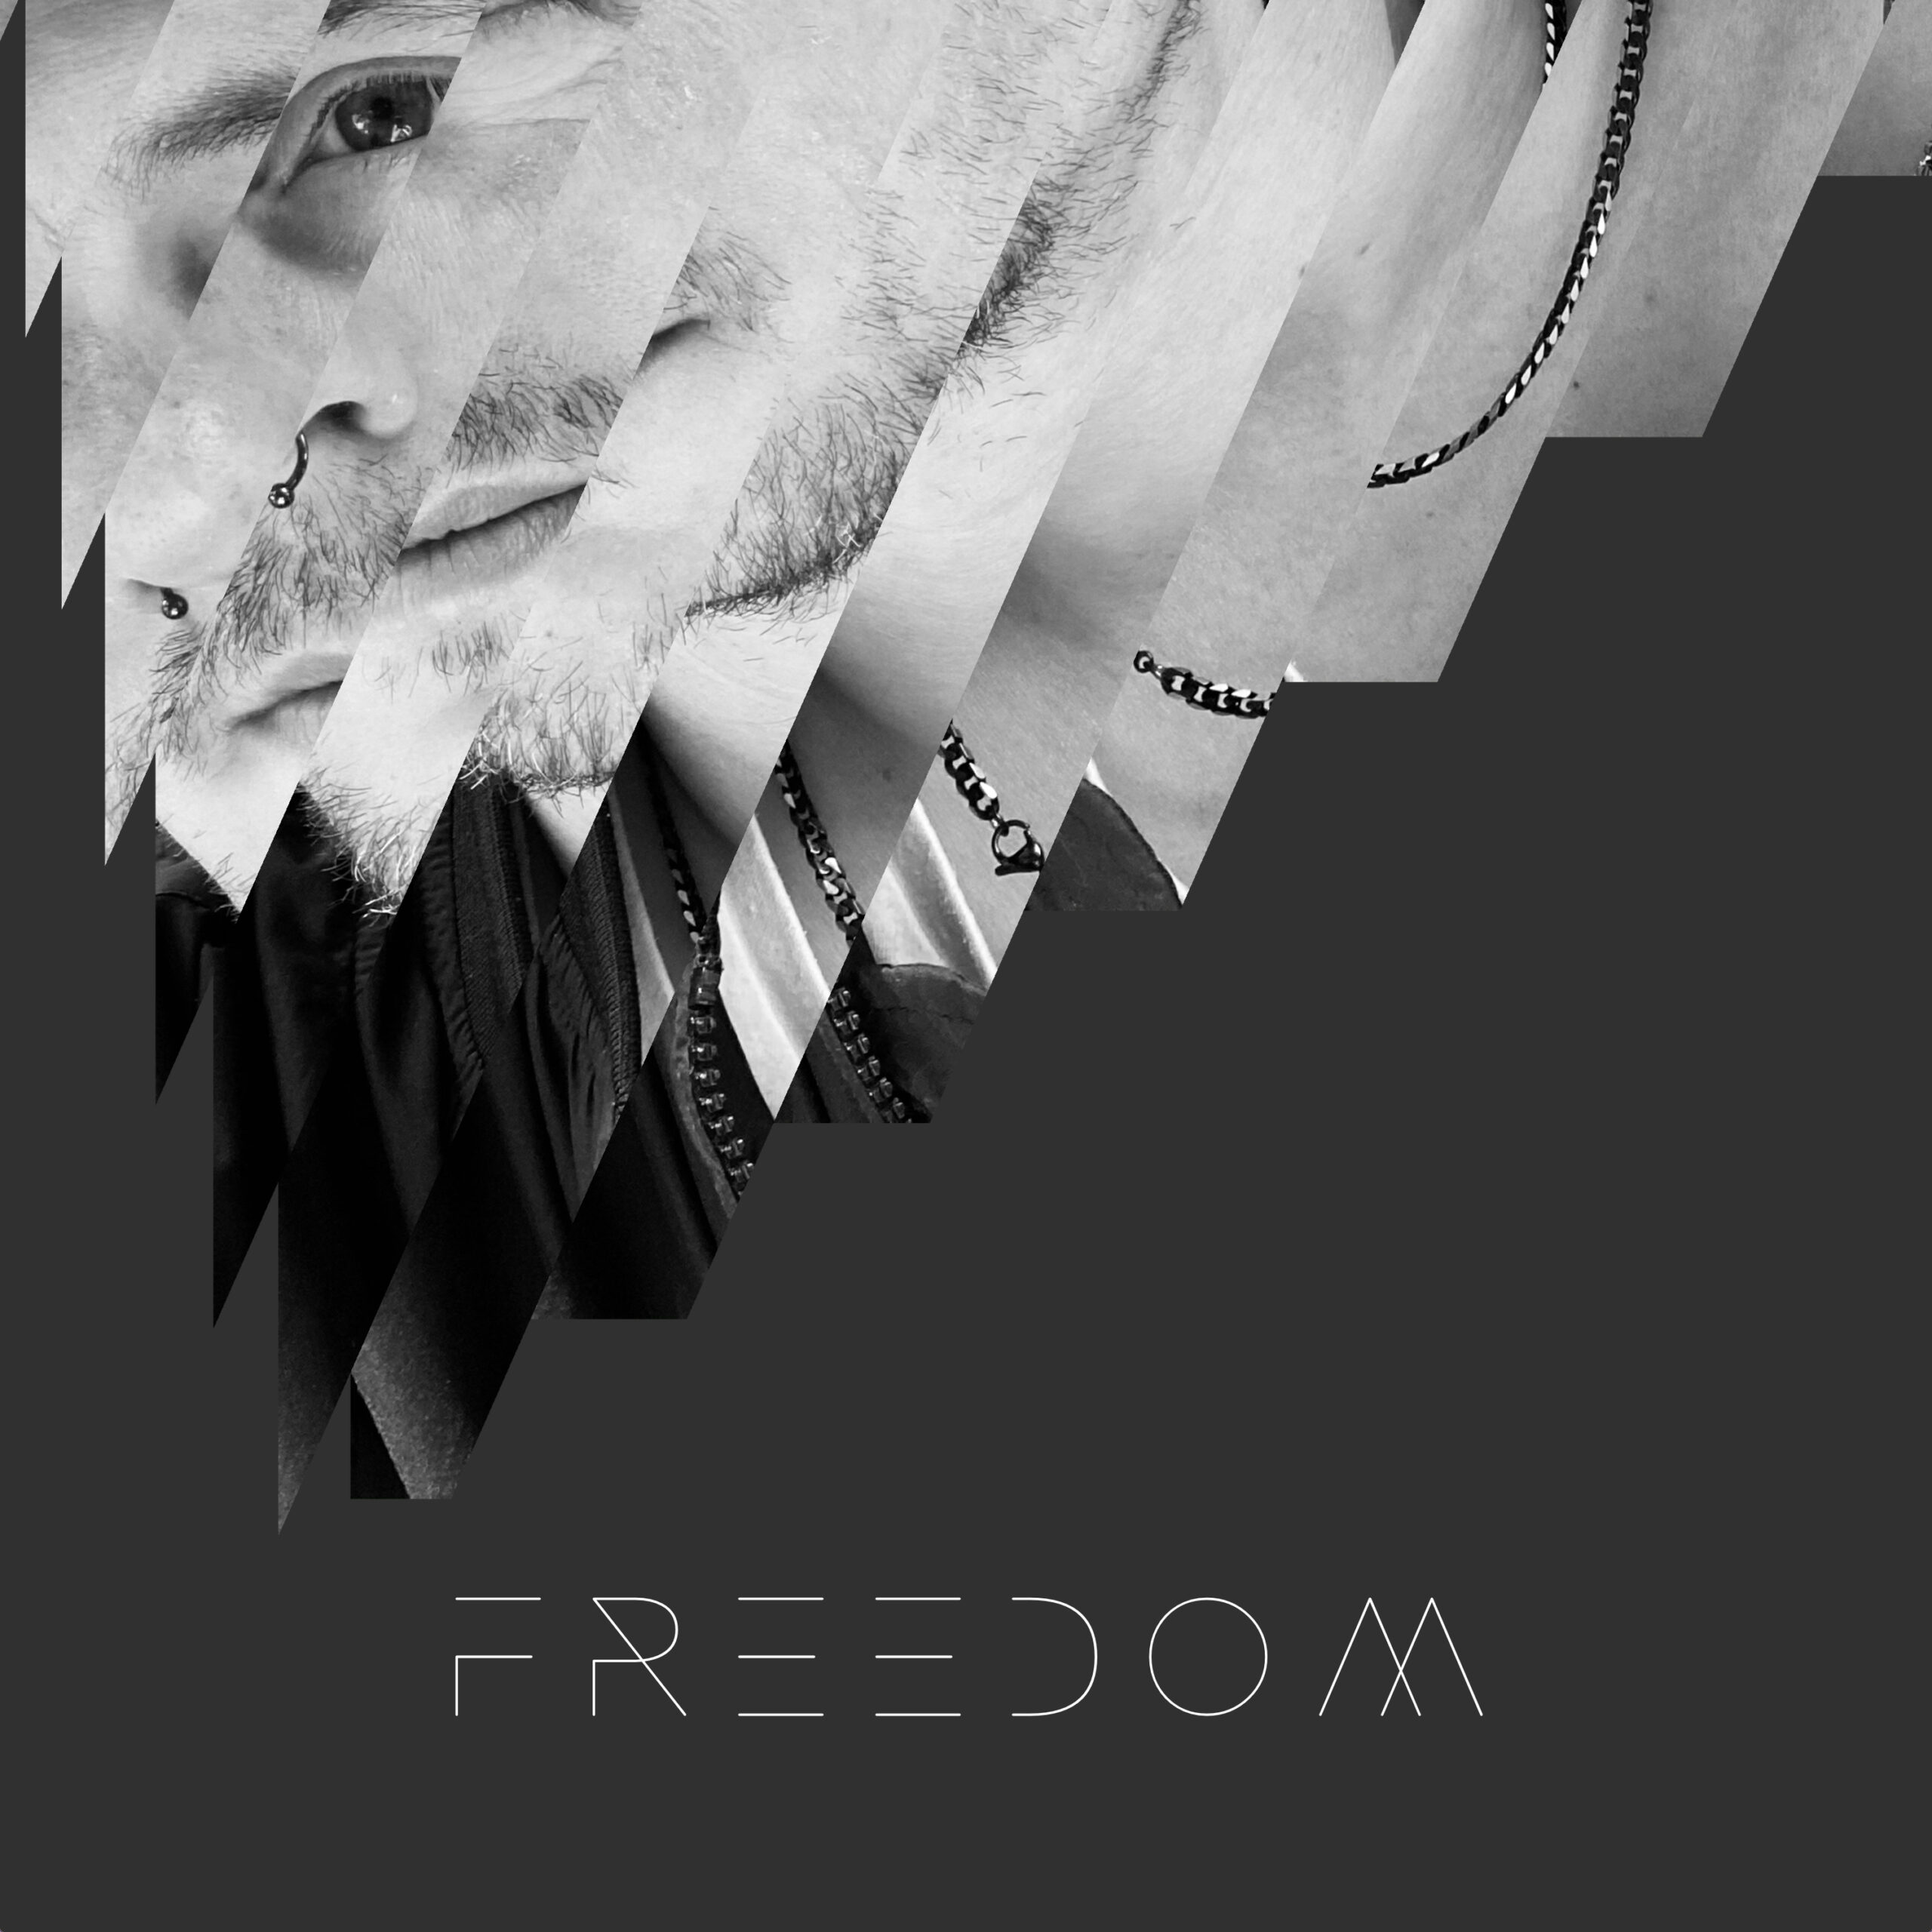 Freedom CD single Cover von und mit Tommy Warzecha